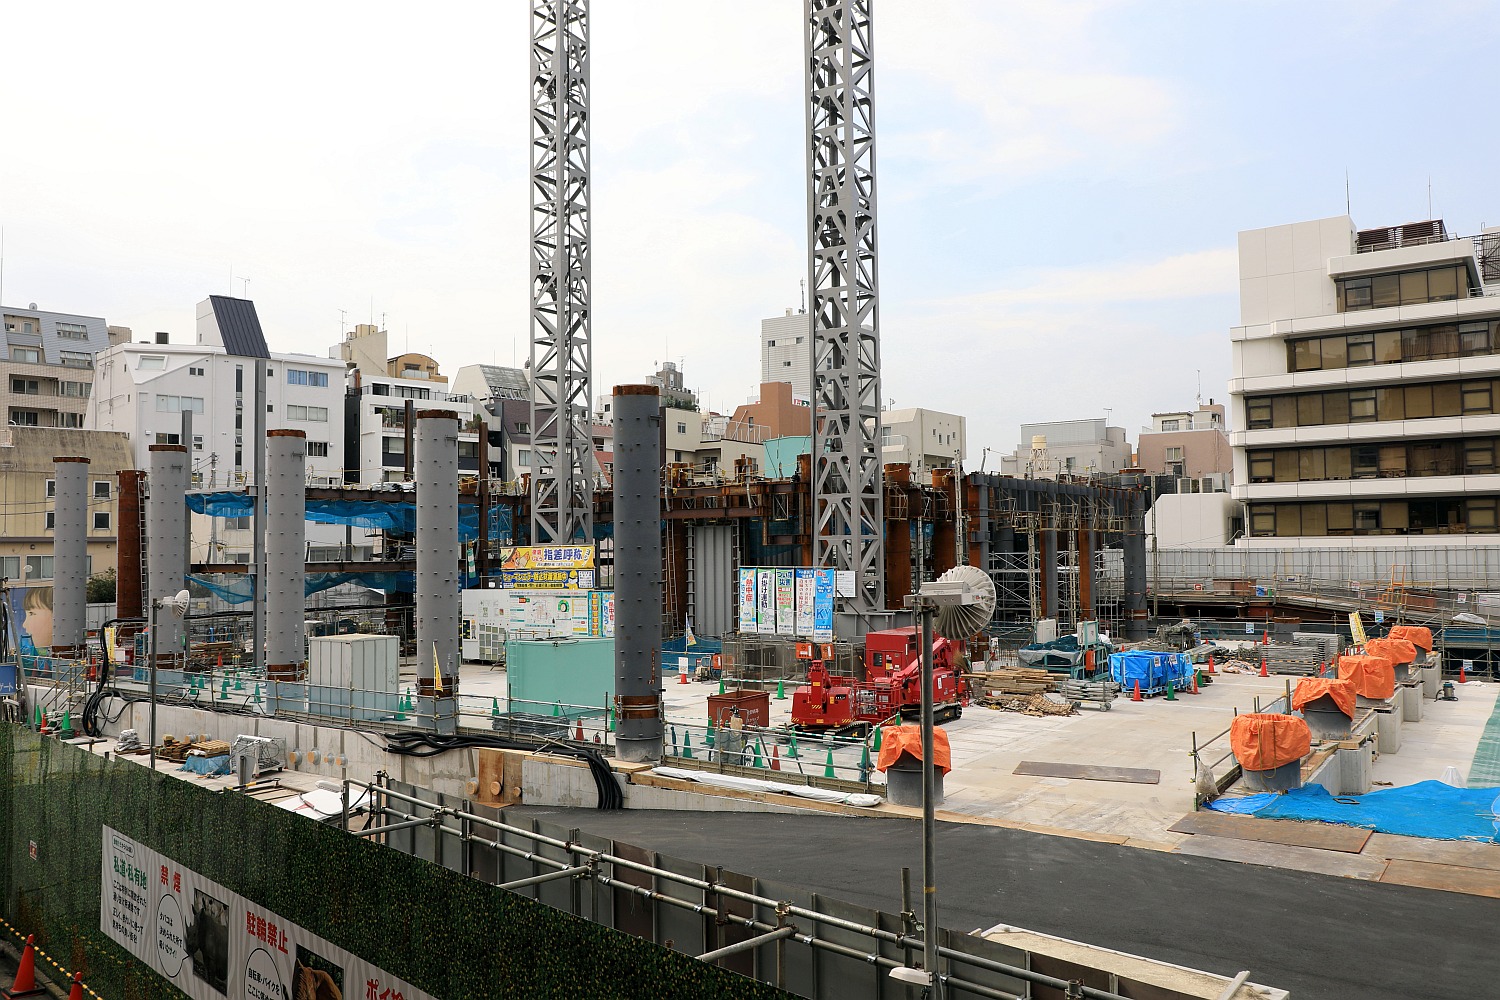 タワークレーン設置 高さ約111m 仮称 渋谷区宇田川町計画 の建設状況 17 9 24 超高層マンション 超高層ビル